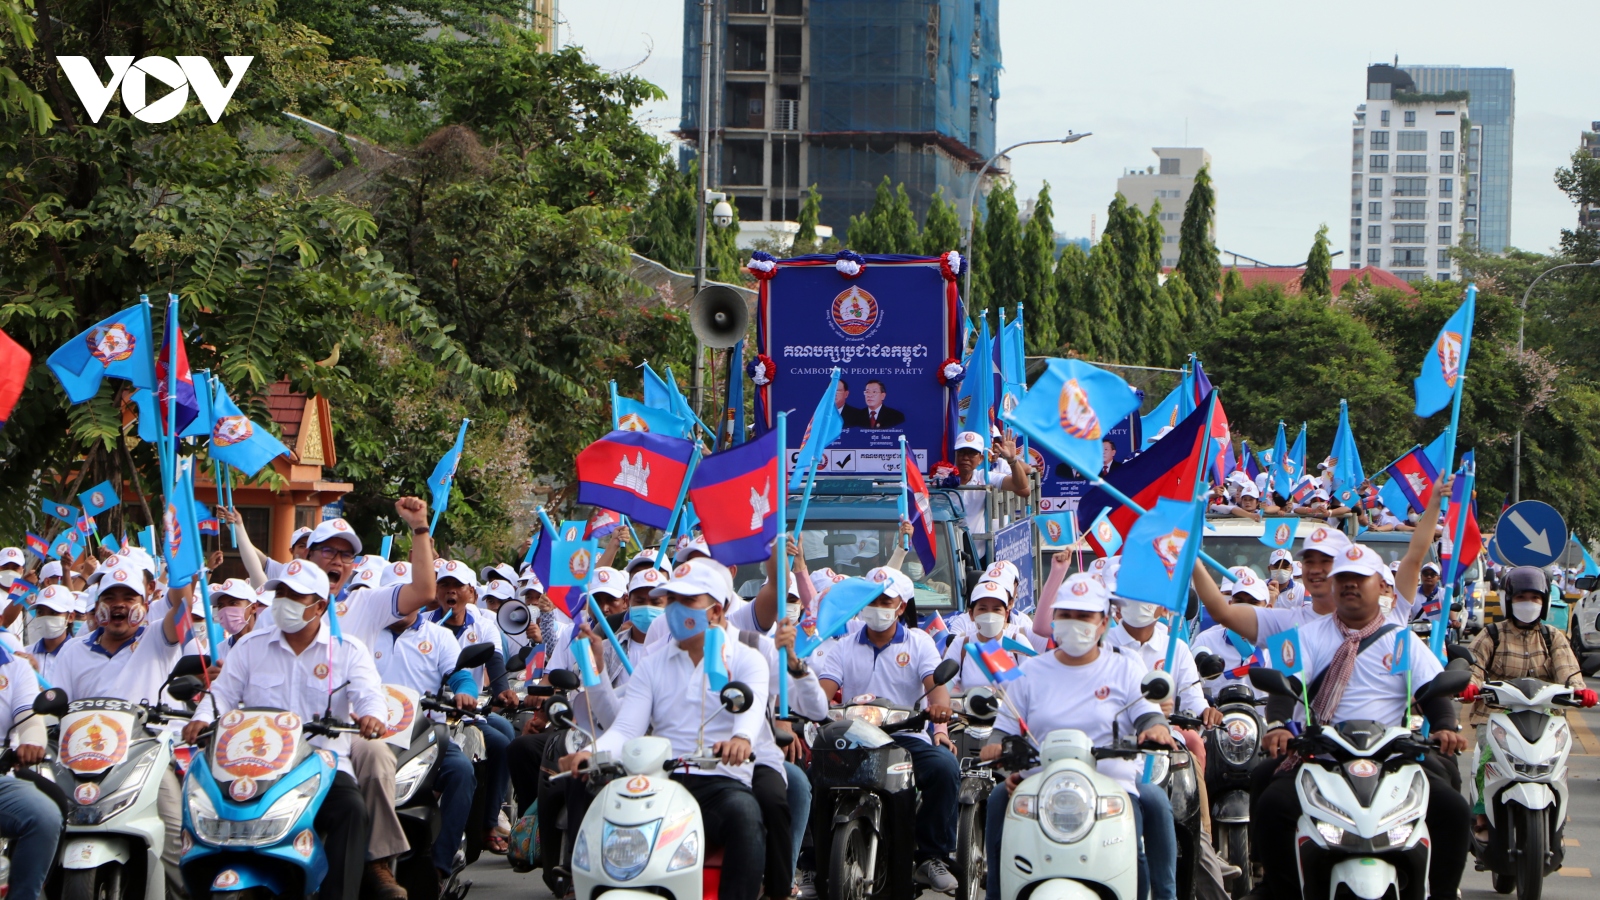 Campuchia bắt đầu chiến dịch vận động tranh cử Hội đồng xã, phường